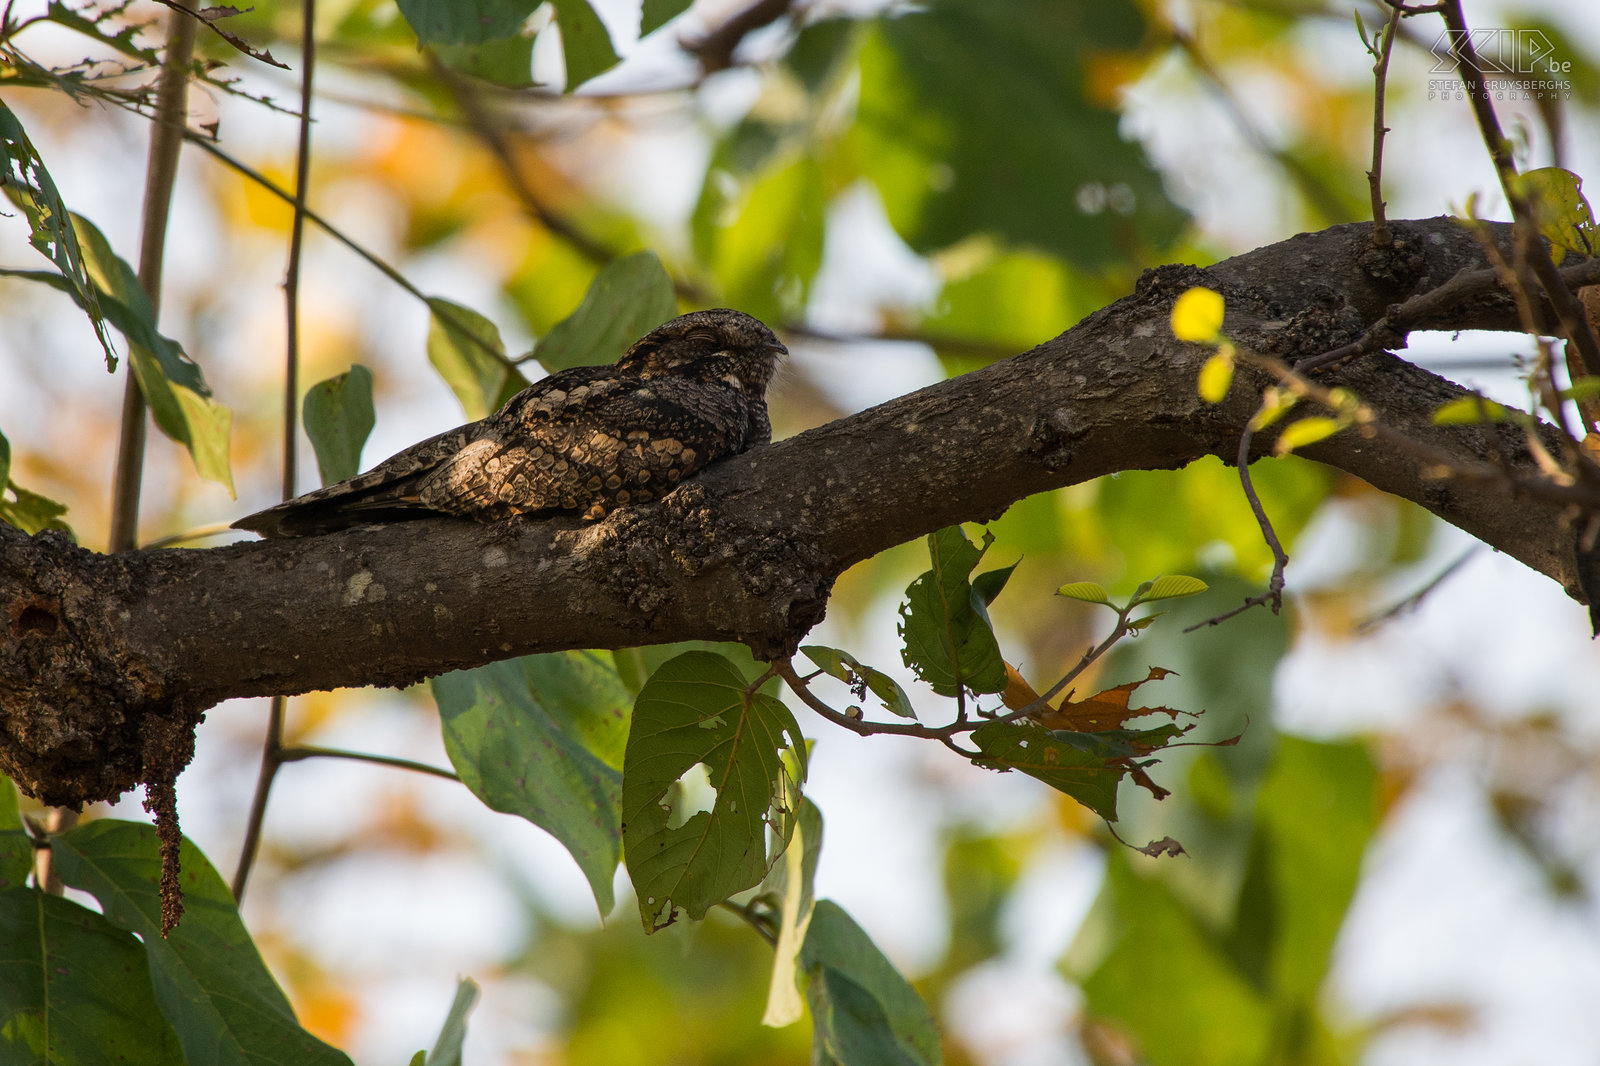 Bandhavgarh - Hindoenachtzwaluw De Hindoenachtzwaluw (Indian nightjar/Caprimulgus asiaticus) is een kleine nachtzwaluw die leeft in open landschappen in Zuid-Azië. Hij vliegt pas na zonsondergang en overdag ligt de vogel stil op de grond of in een boom en dan is het heel moeilijk om hem te spotten. Stefan Cruysberghs